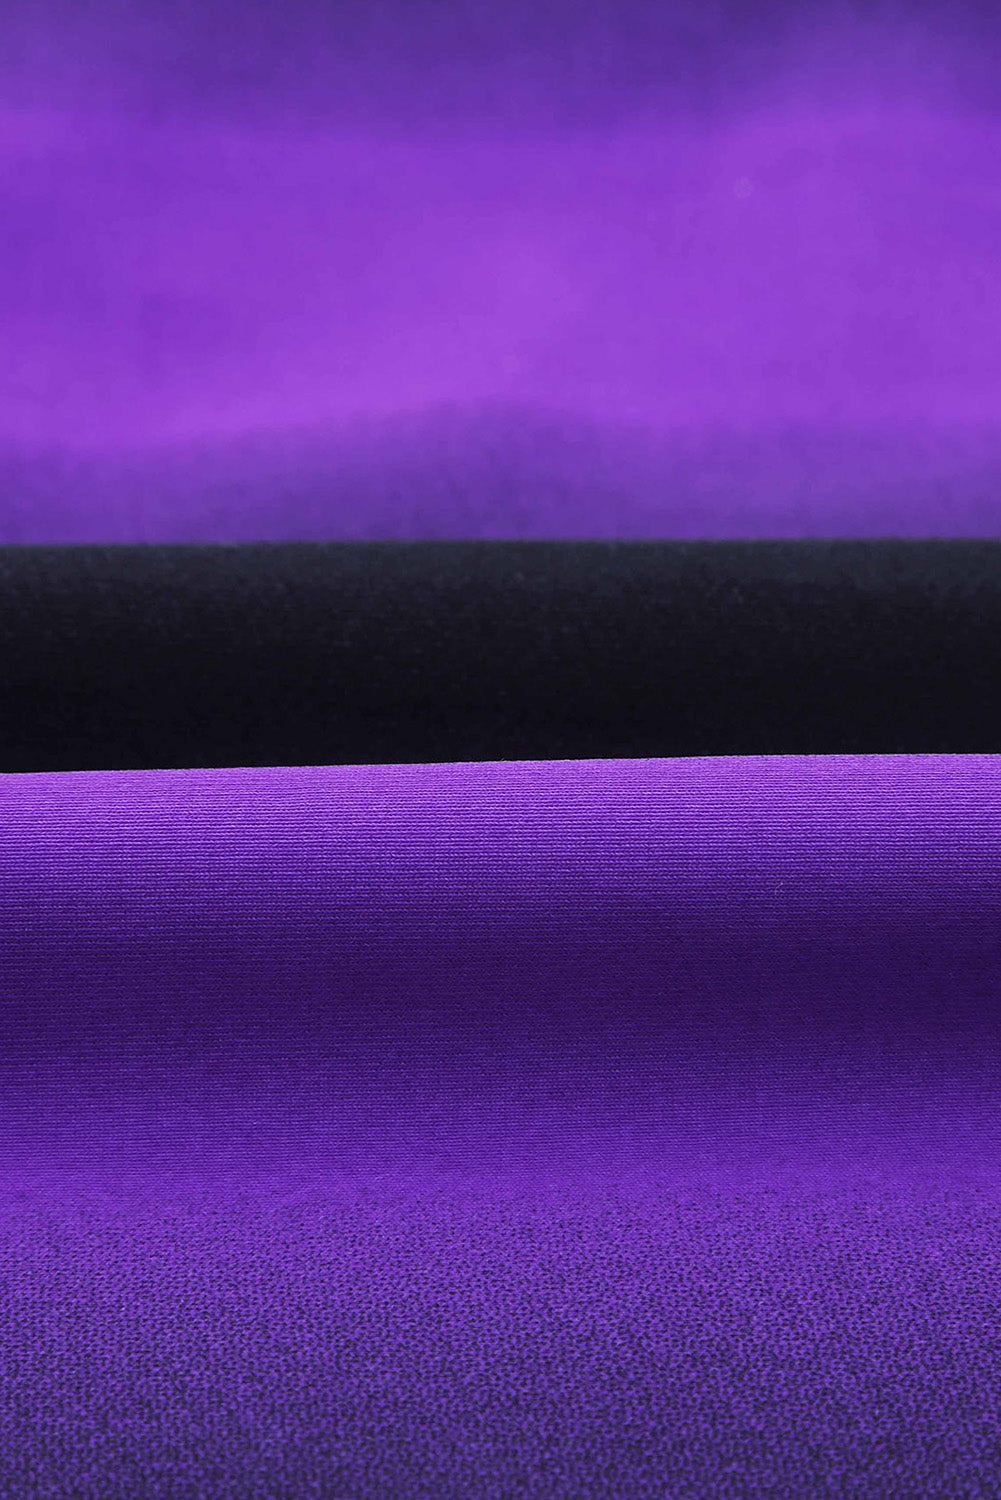 Maillot de bain tankini violet et noir à imprimé ombré, dos nageur